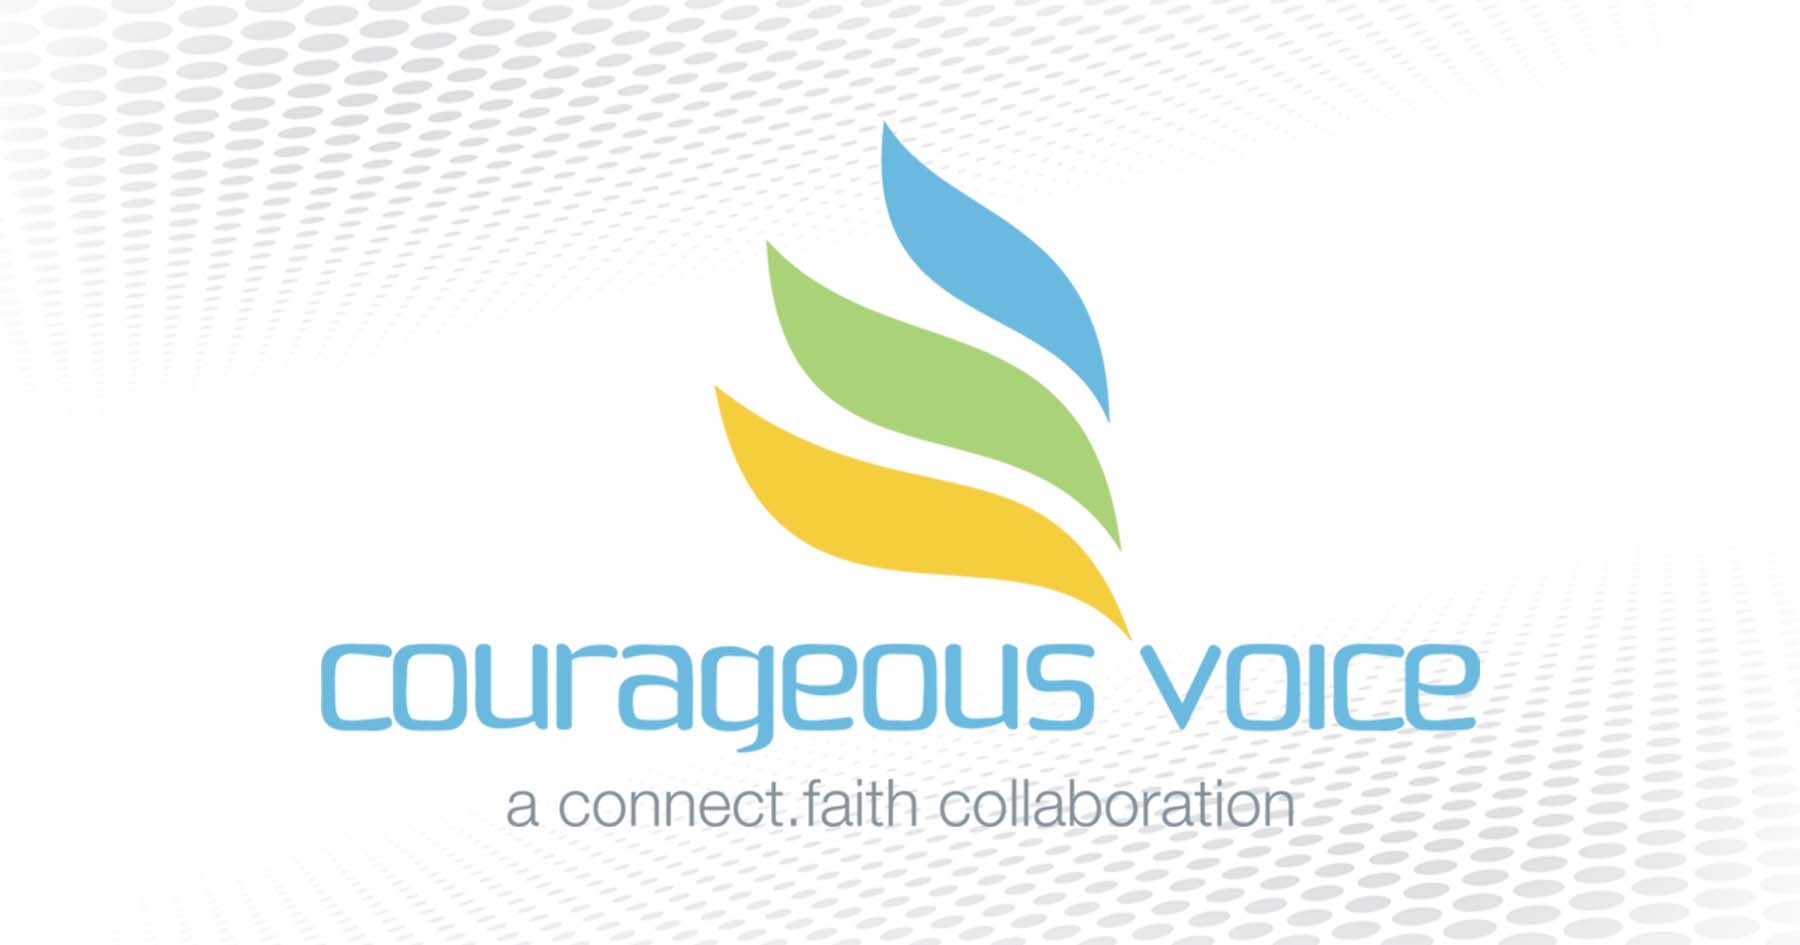 Denise Van de Cruze | “Courageous Voice” | connect.faith